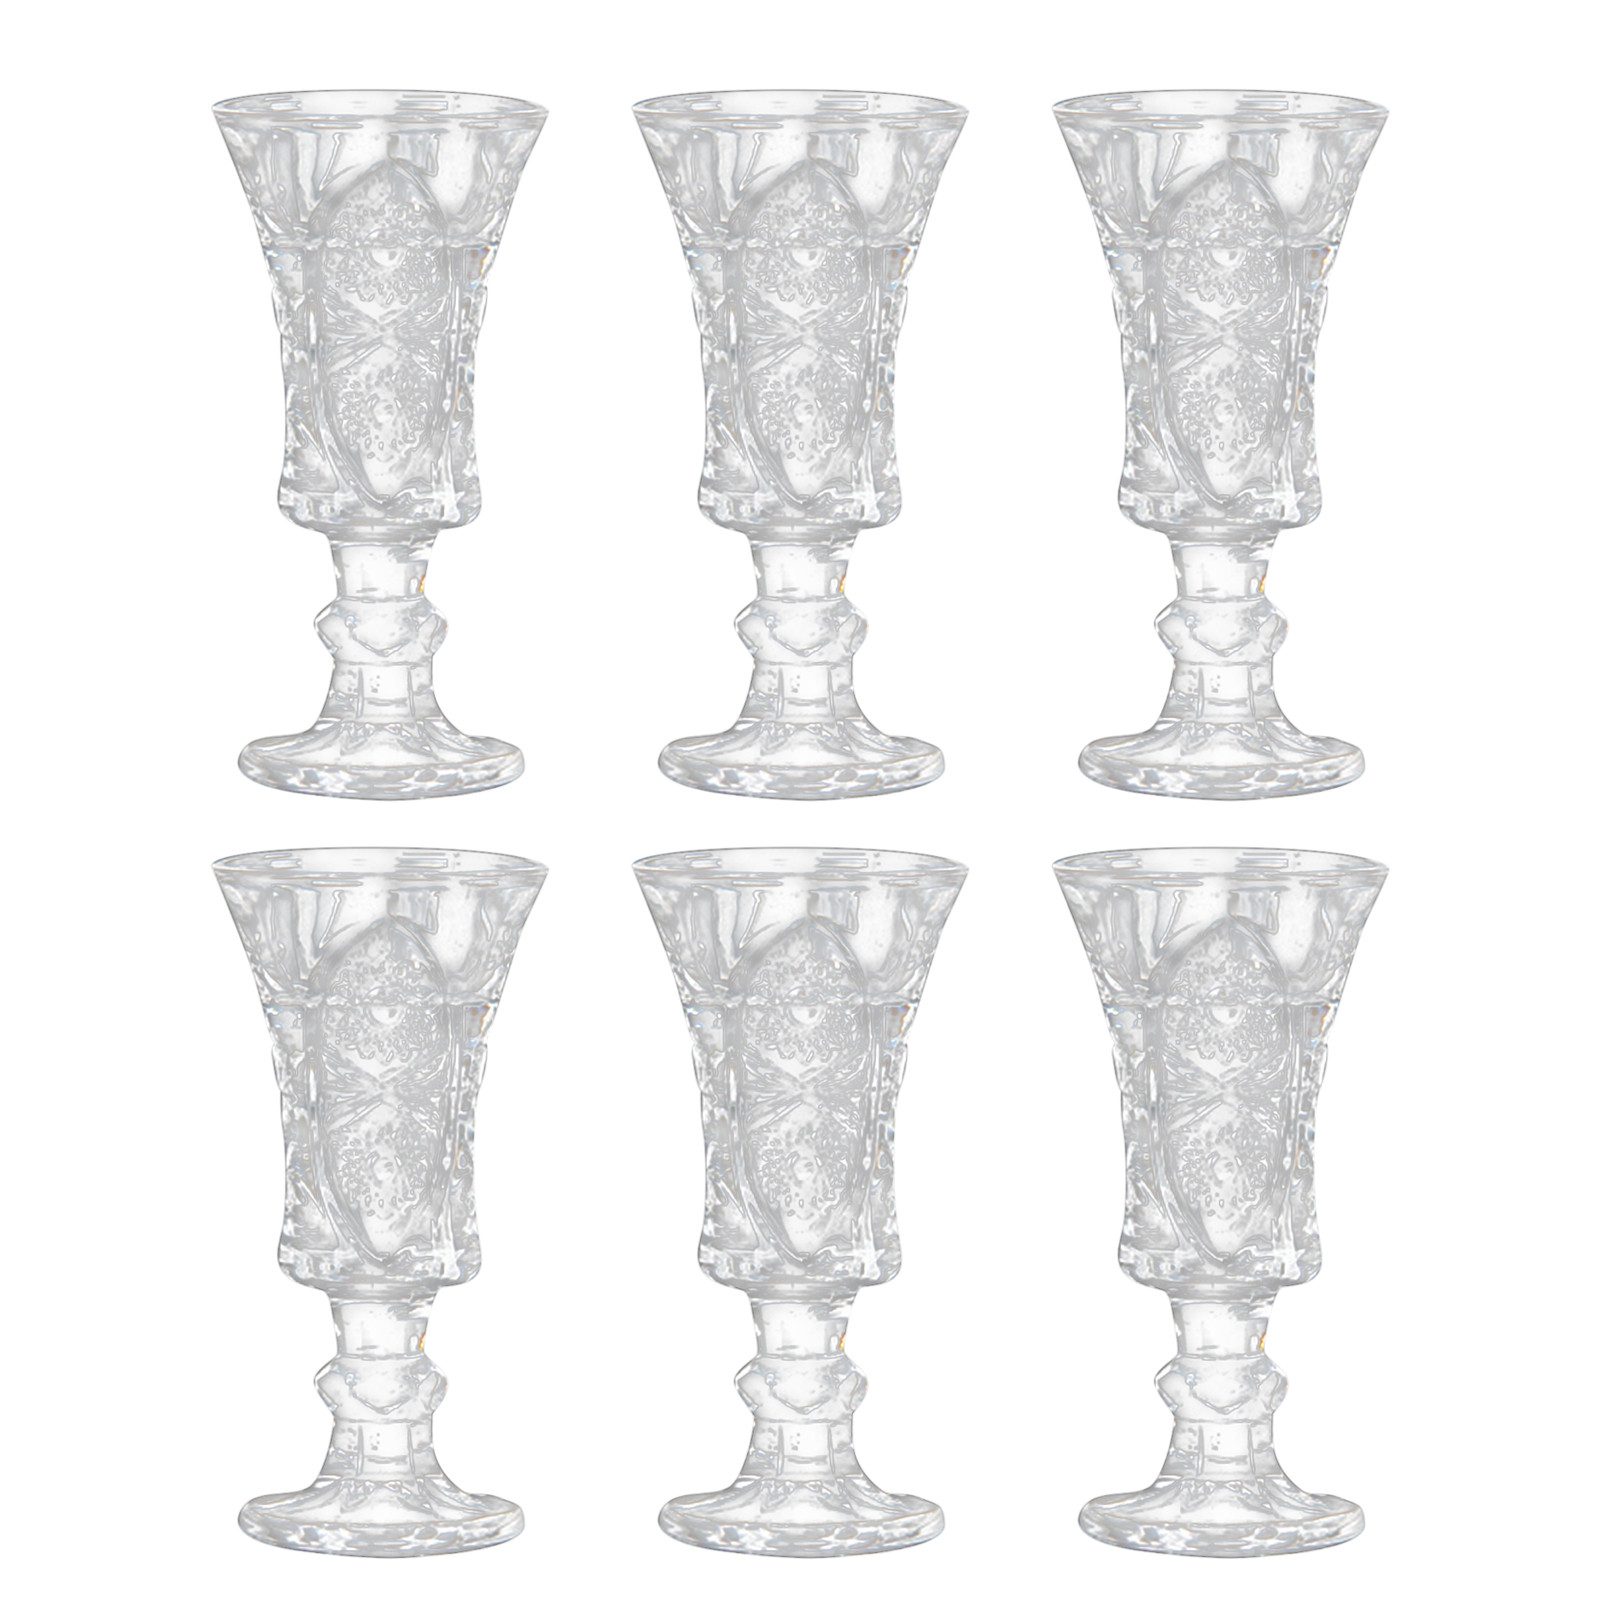 REDOM Schnapsglas 6er Set Schnapsgläser Glas Shotgläser Kleine Likörgläser Weinglas, Glas, Kristallglas für den privaten Gebrauch die Gastronomie Bars Catering